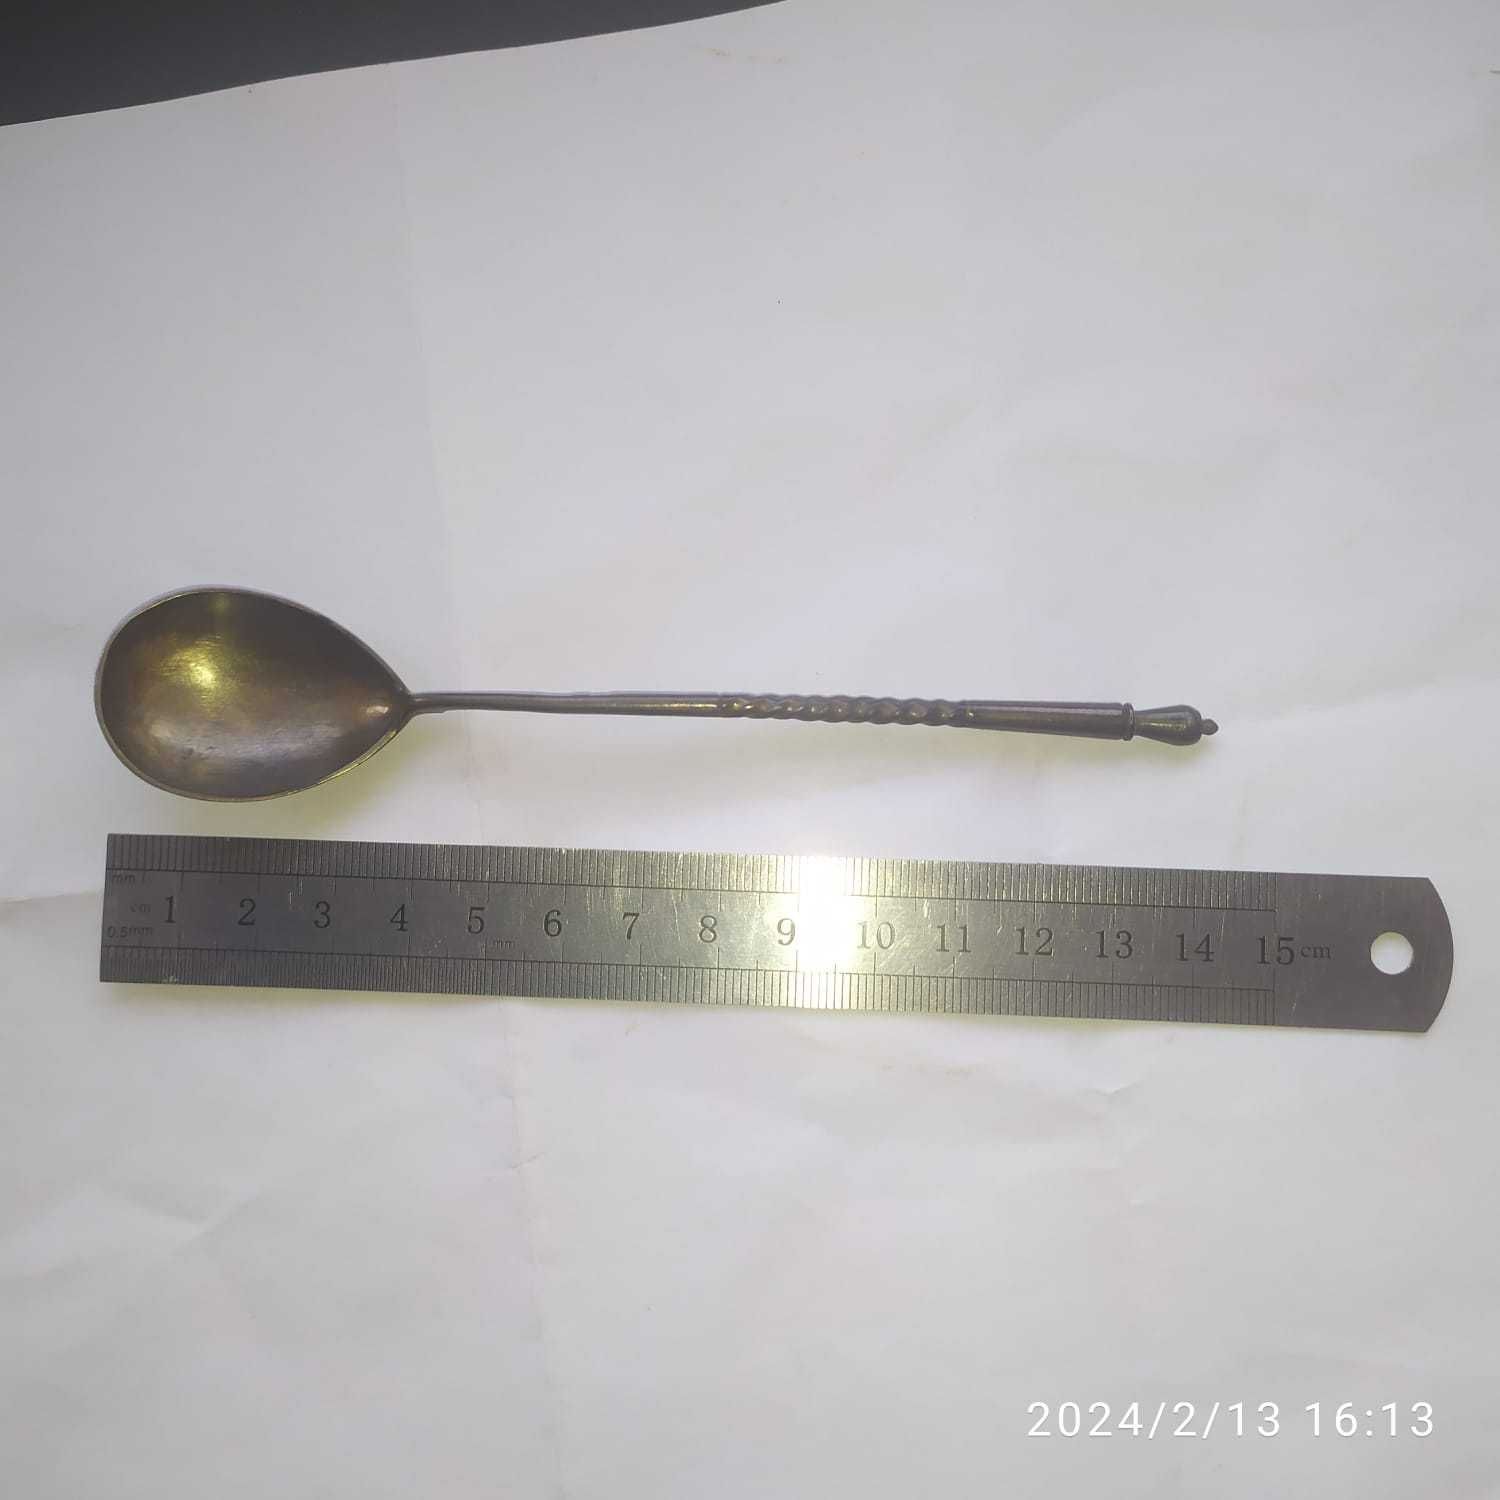 Старинная чайная серебряная ложка с винтовой ручкой